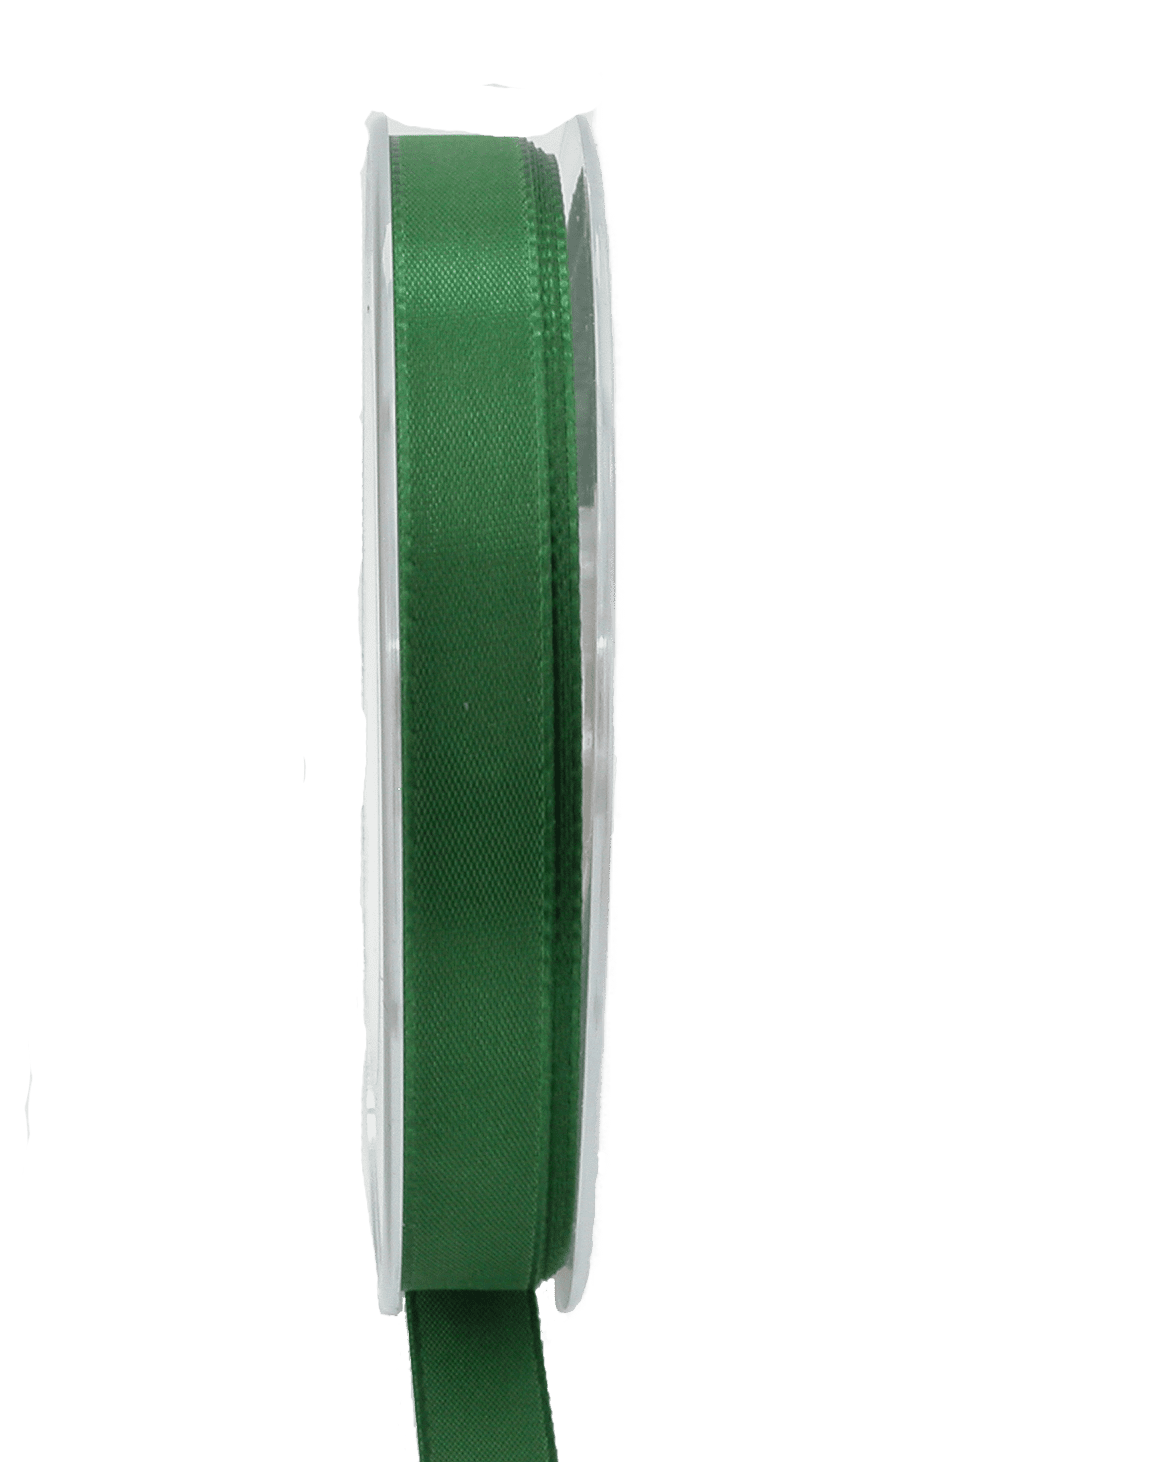 Dekoband ECONOMY, dunkelgrün, Breite 15 mm, 50m Band DIY Basteln Geschenkband Schleife